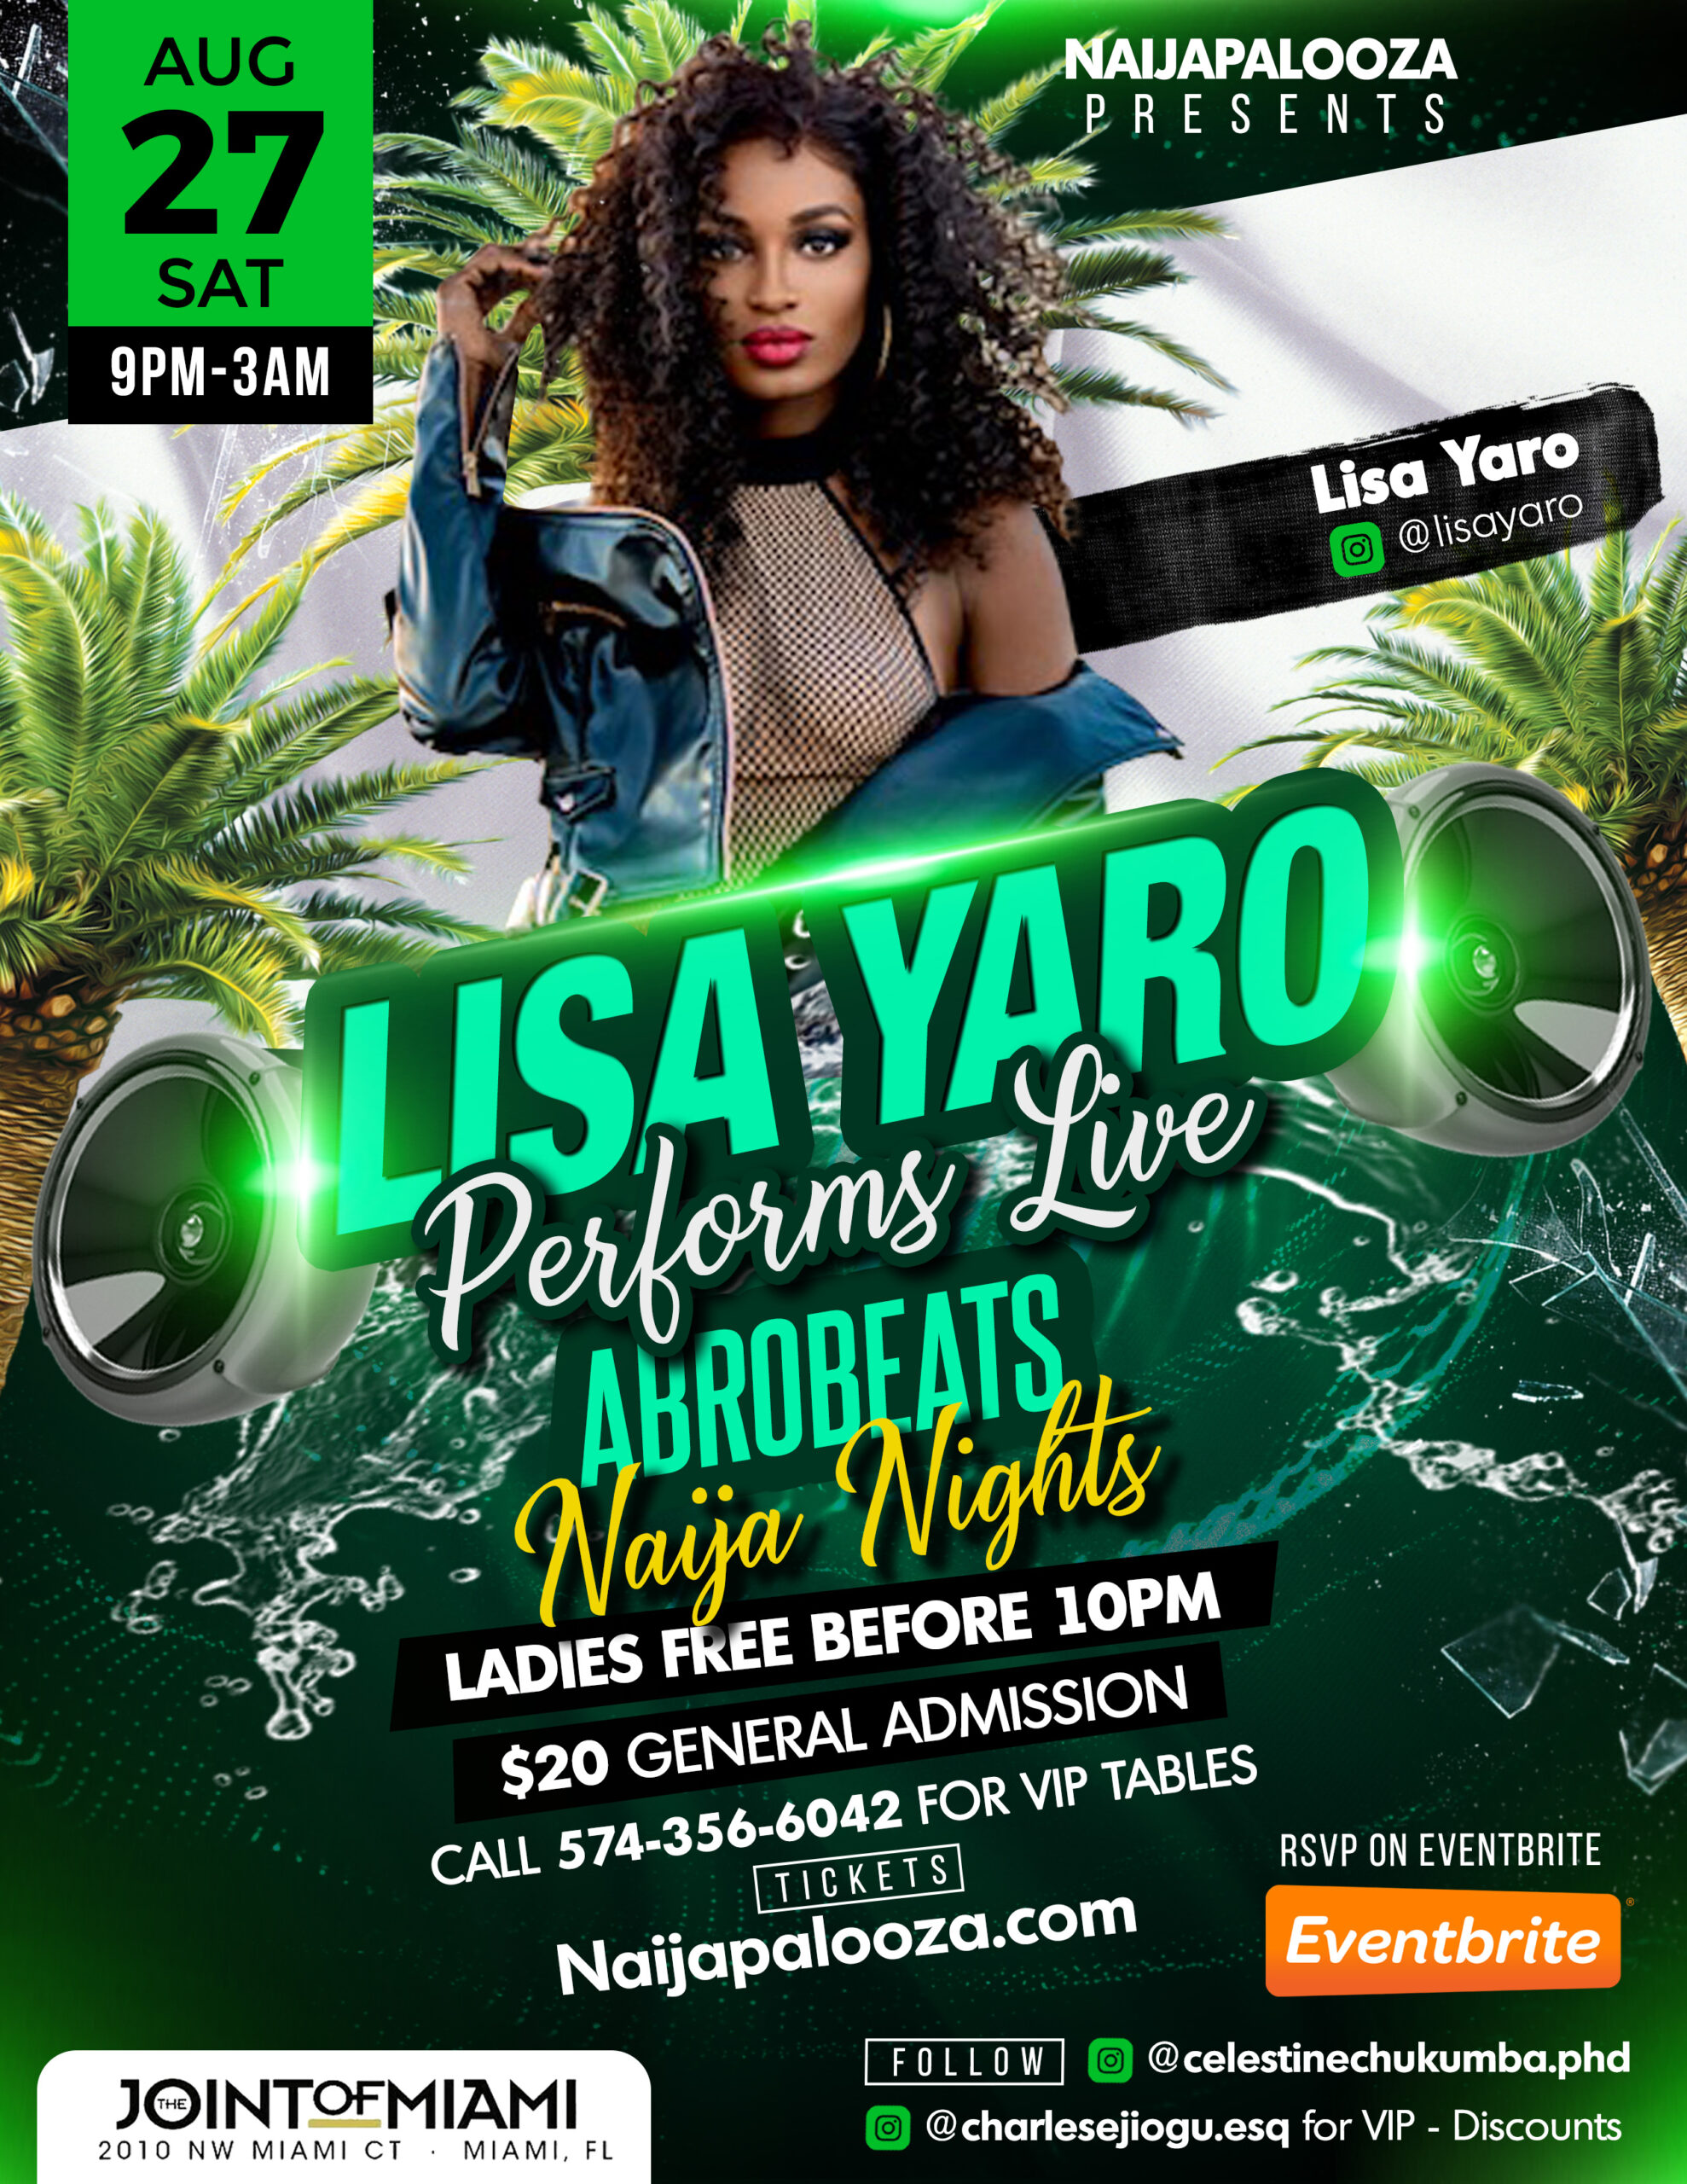 Afrobeats Miami Lisa Yaro Concert & Afterparty At NaijaPalooza 8/27/22